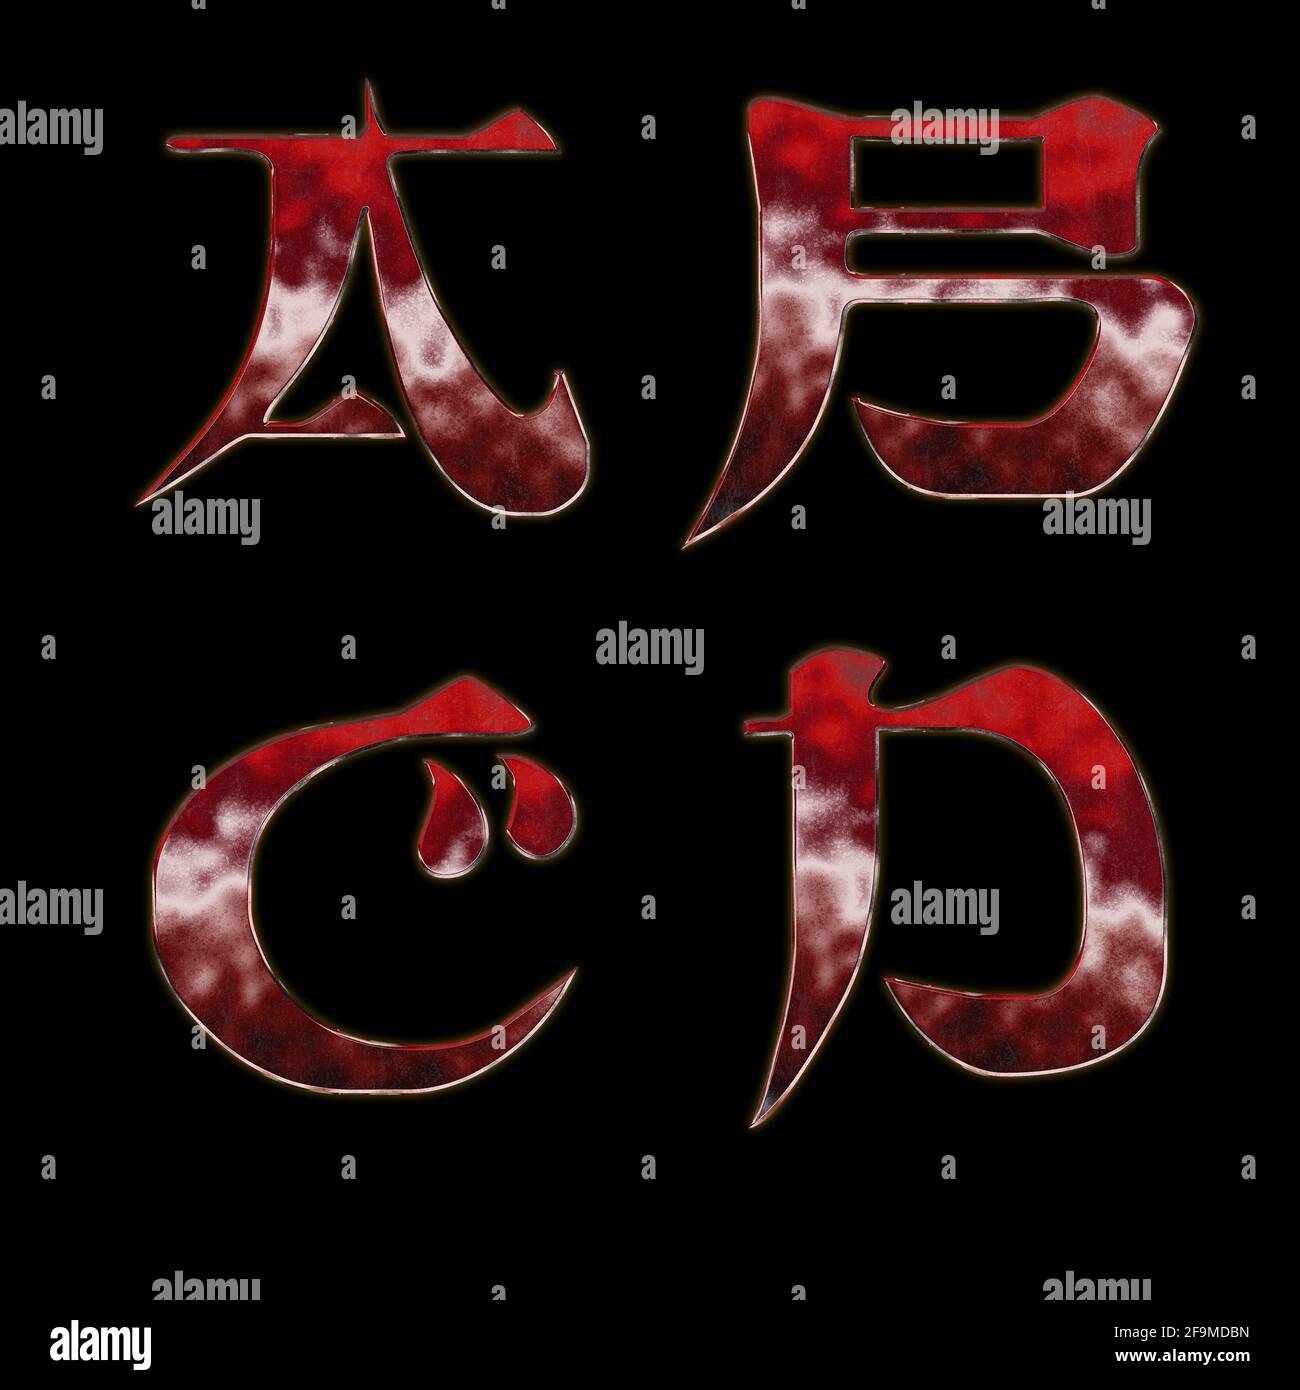 Rendu 3D de l'alphabet métallique rouge de style japonais - lettres A-D Banque D'Images